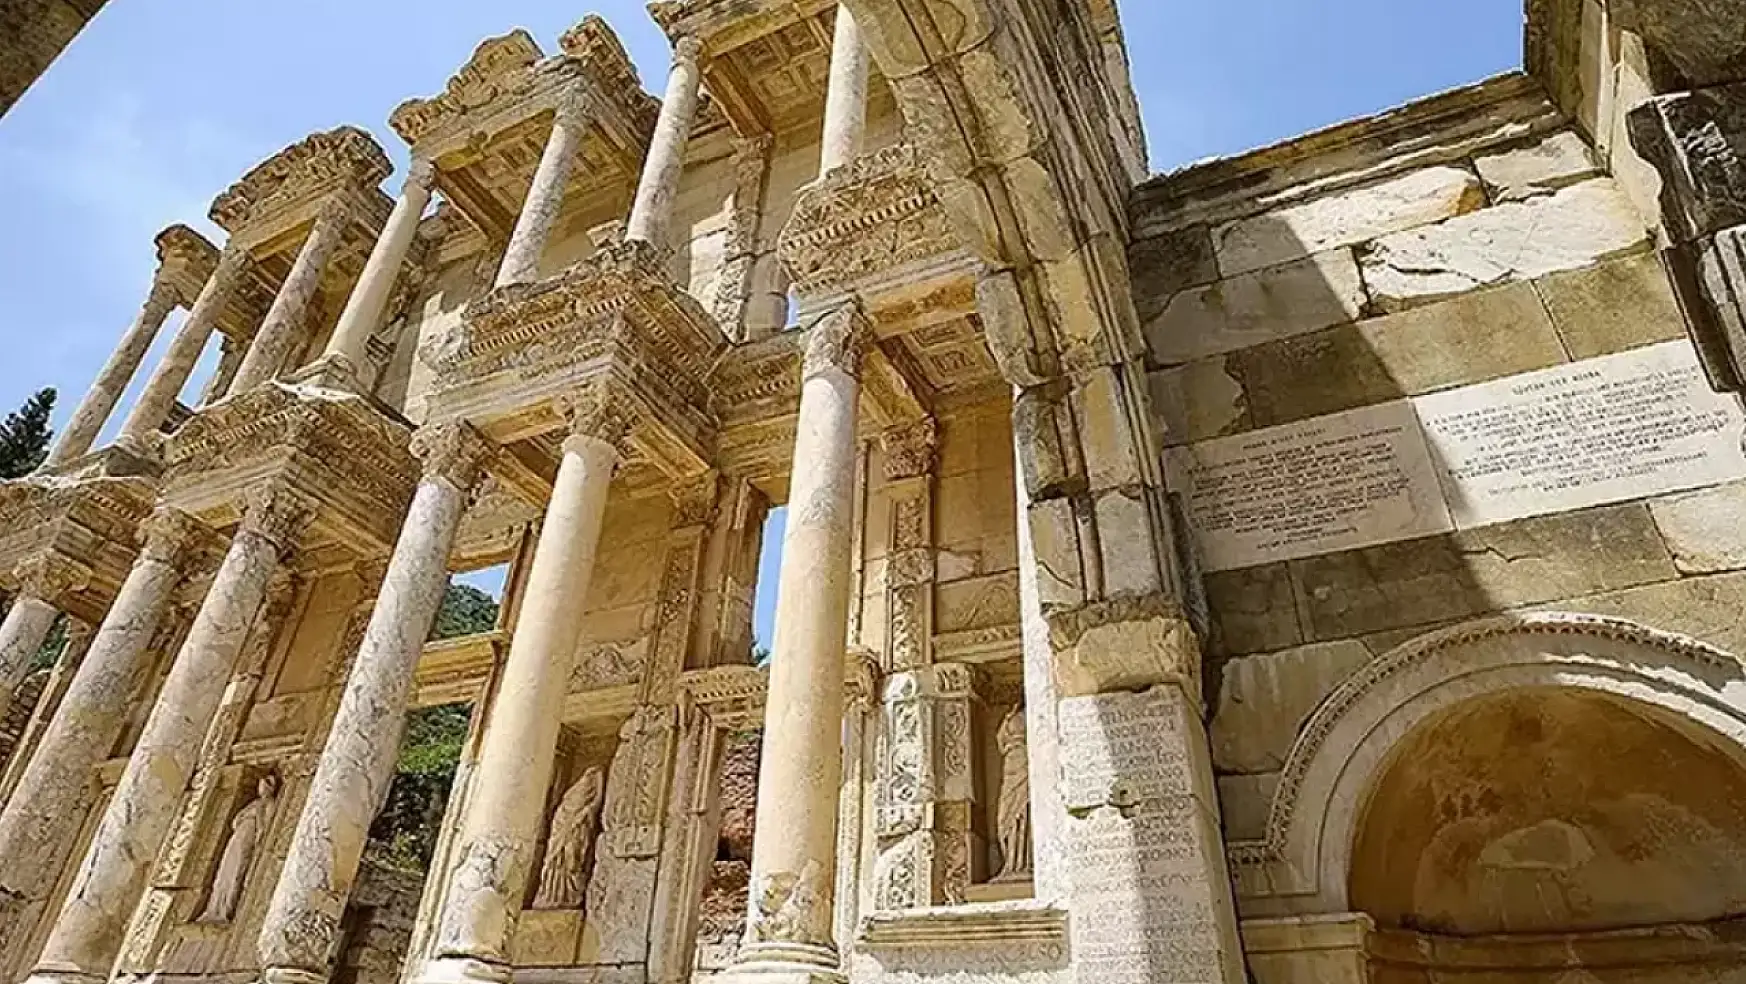 Artemis Tapınağı: Antik dönemin ihtişamını yansıtan efsanevi bir mabed